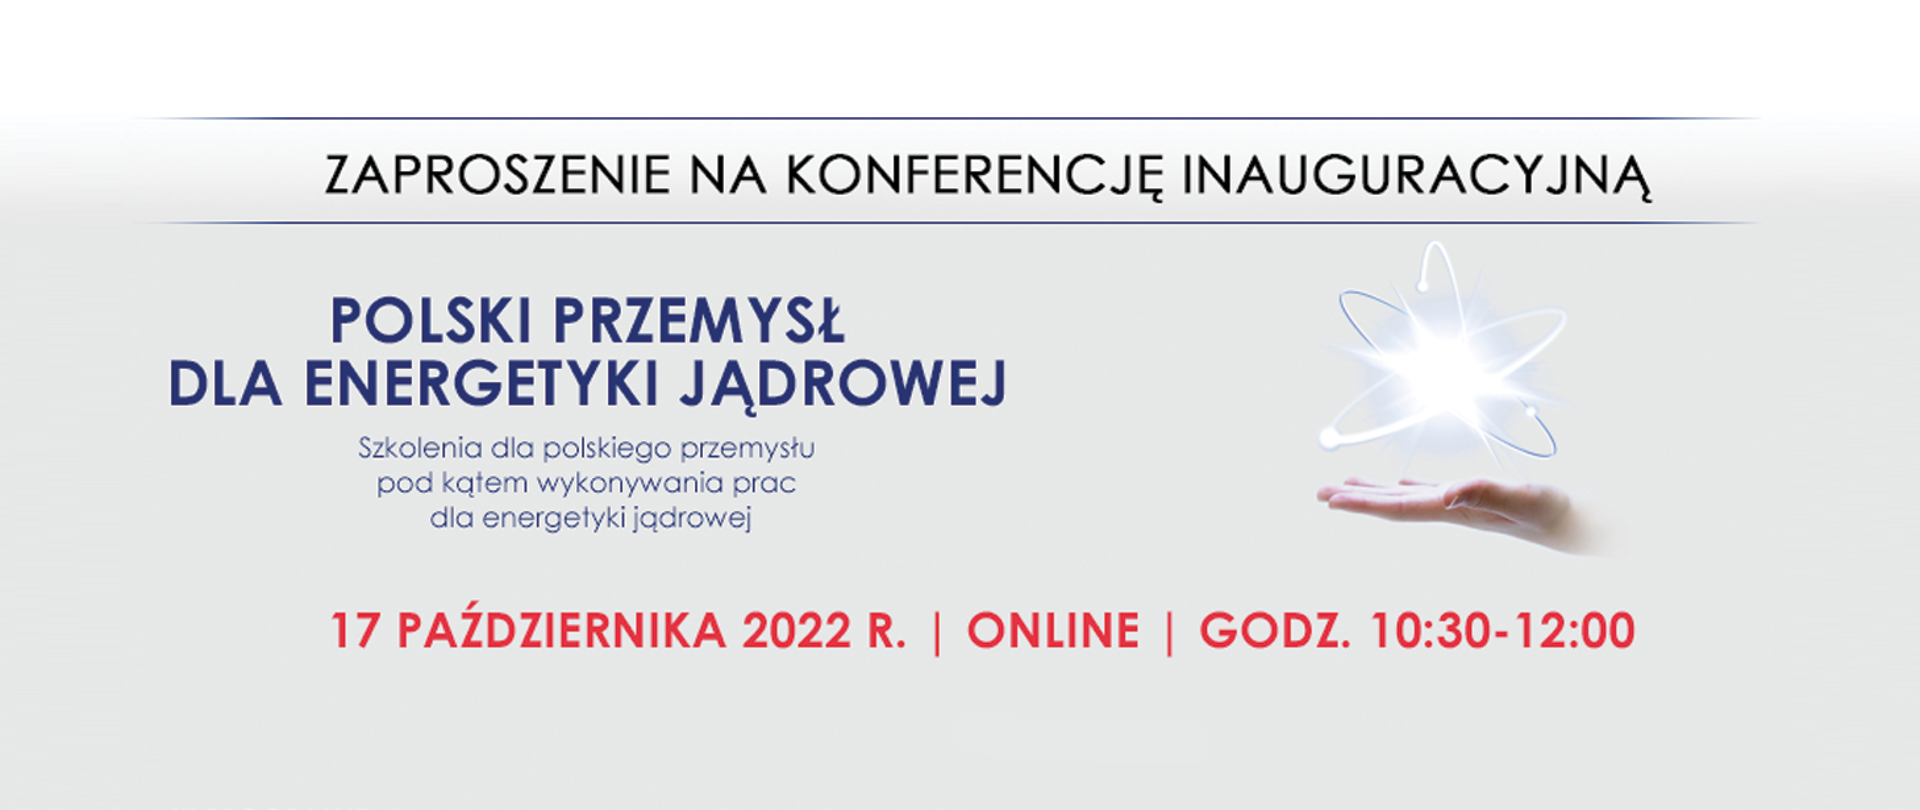 Zaproszenie na konferencję inauguracyjną Polskiego przemysłu dla energetyki jądrowej
Szkolenia dla polskiego przemysłu pod kątem wykonywania prac dla energetyki jądrowej
17 października 2022 r., online, godz. 10:30 - 12:00